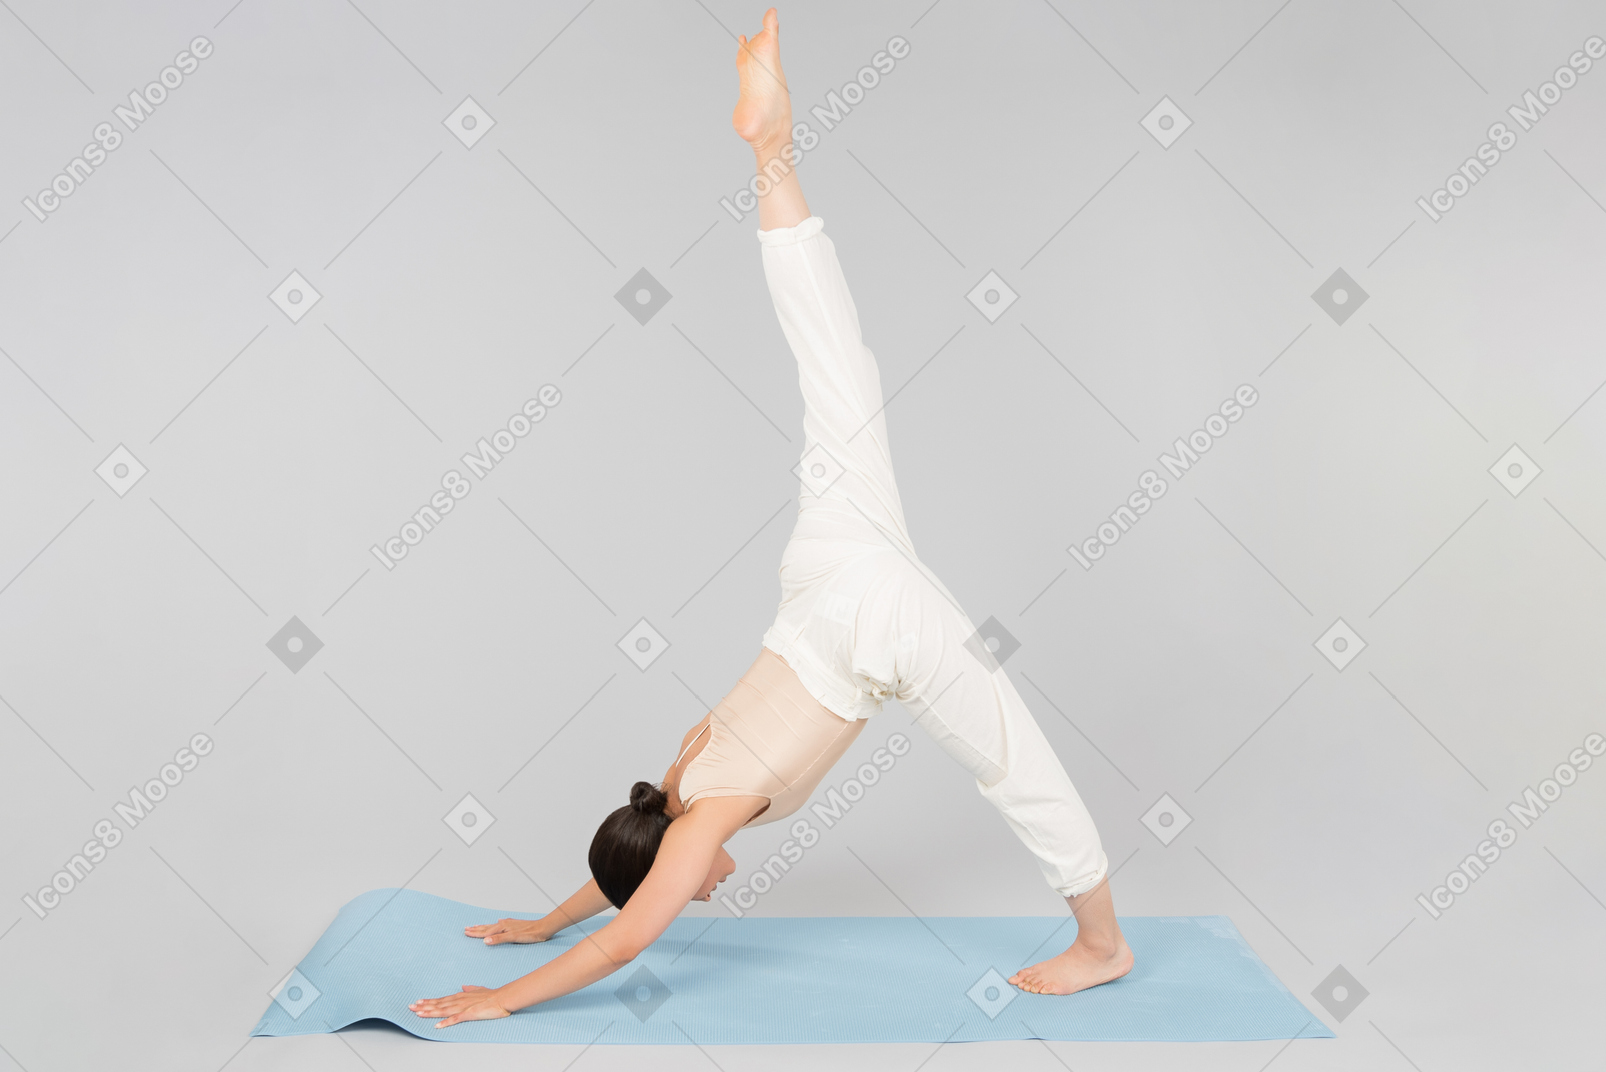 Jeune femme indienne debout dans une posture de yoga sur tapis de yoga